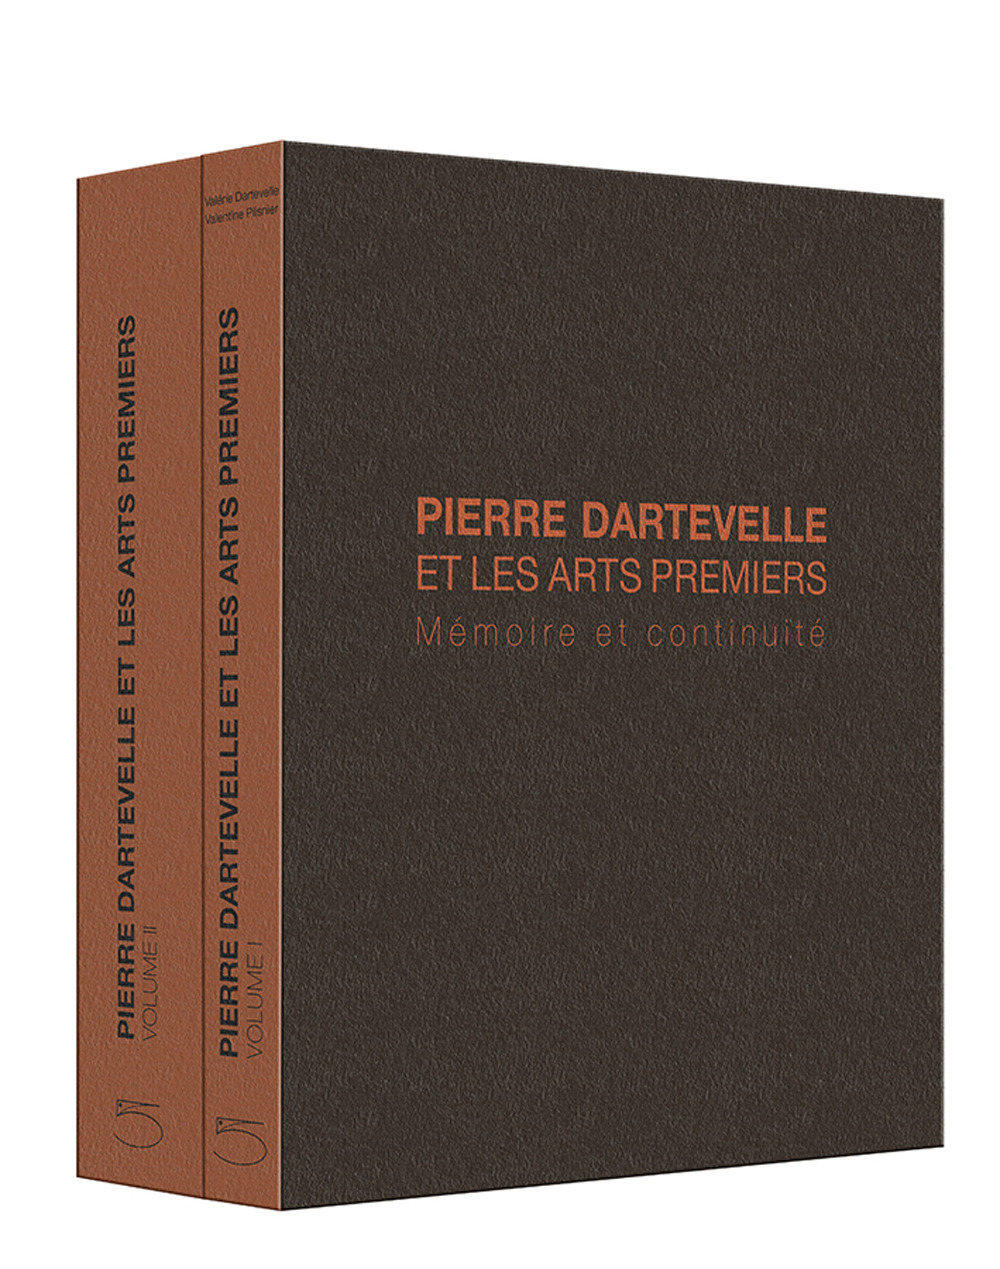 Pierre Dartevelle et les arts premiers. Mèmoire et continuité. Ediz. illustrata